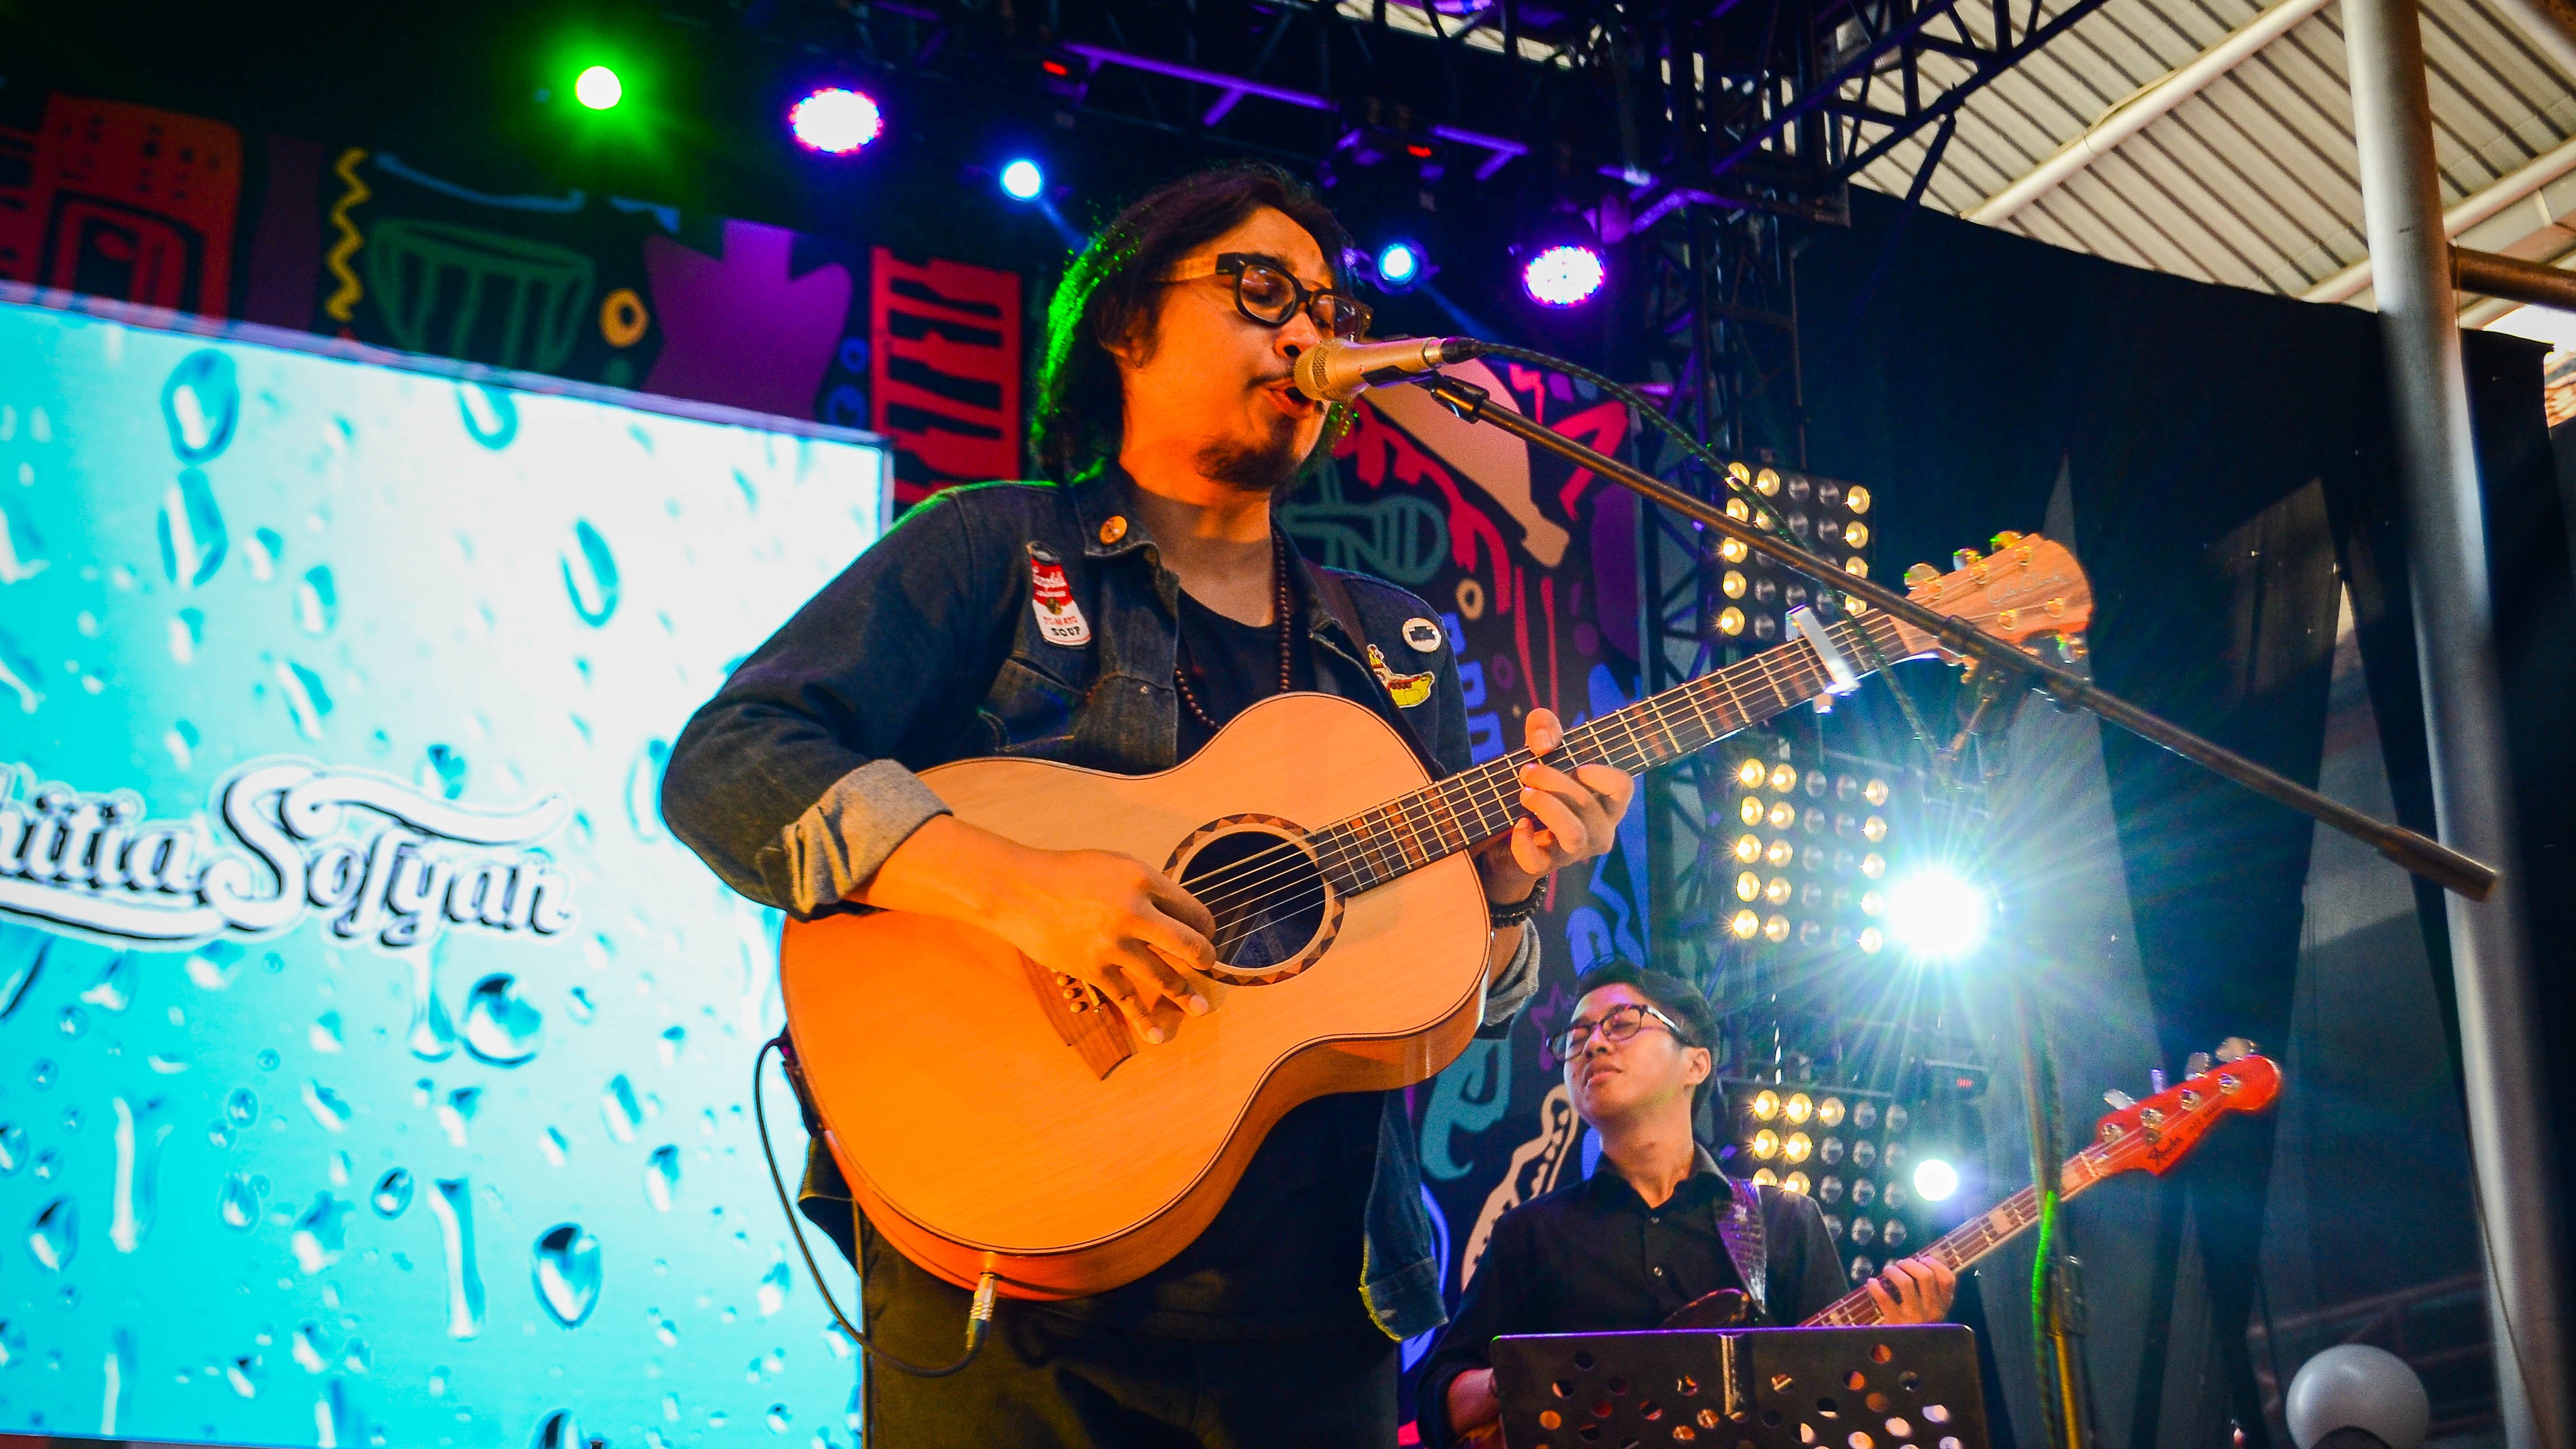 Mengenal Adhitia Sofyan, Penyanyi Lagu Sesuatu di Jogja yang Sedang Hits